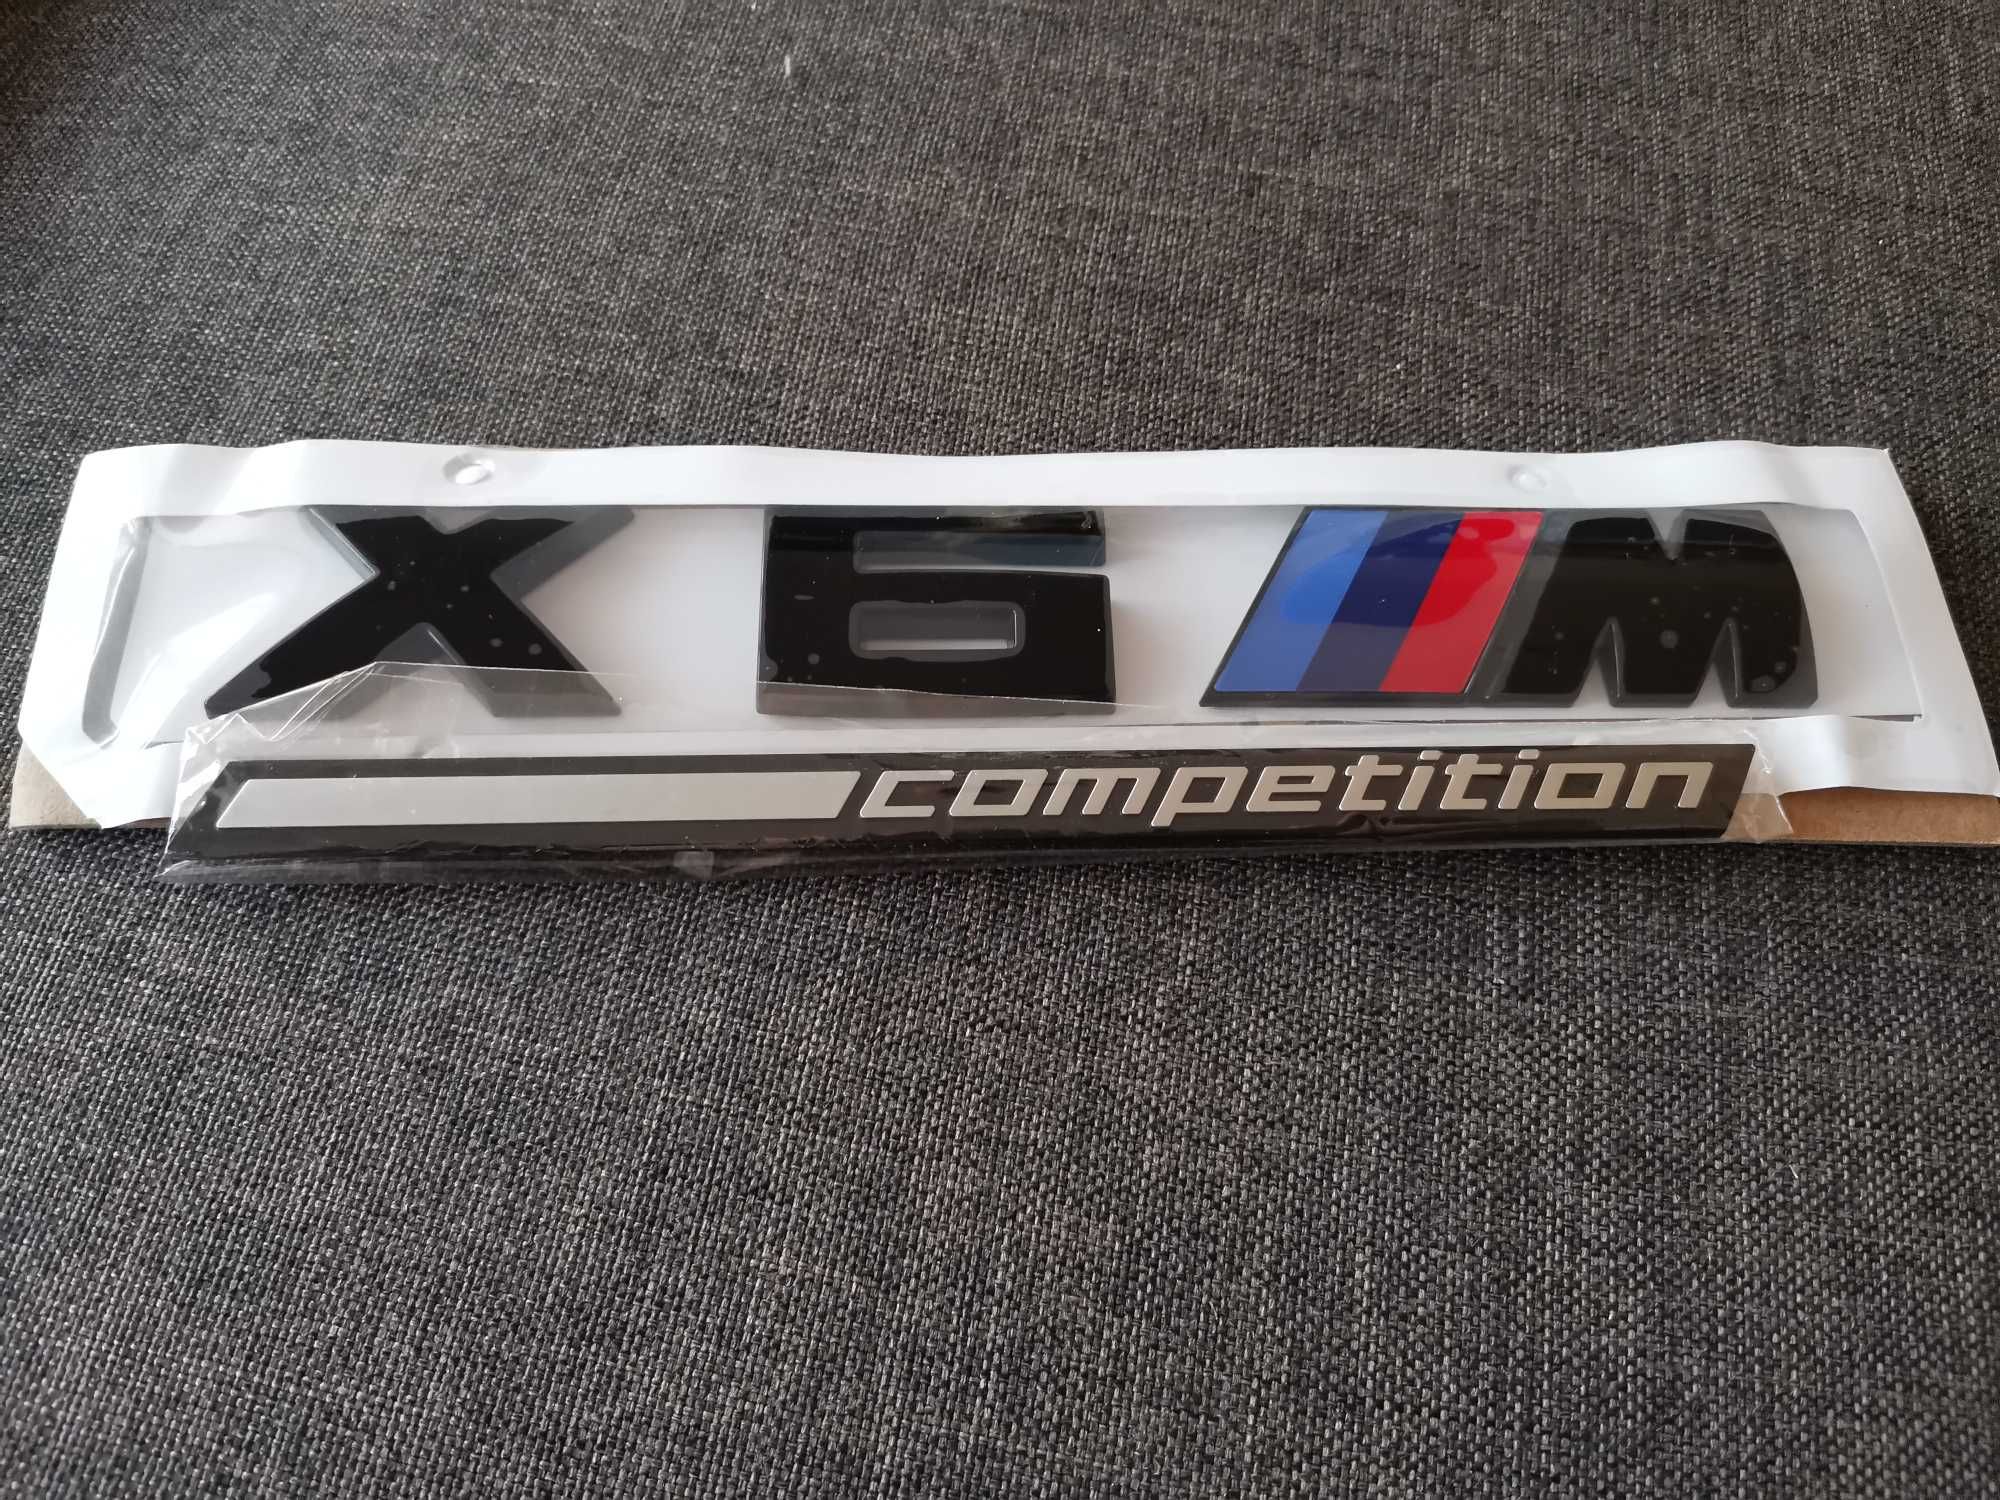 БМВ Bmw Х6 М Competition емблема